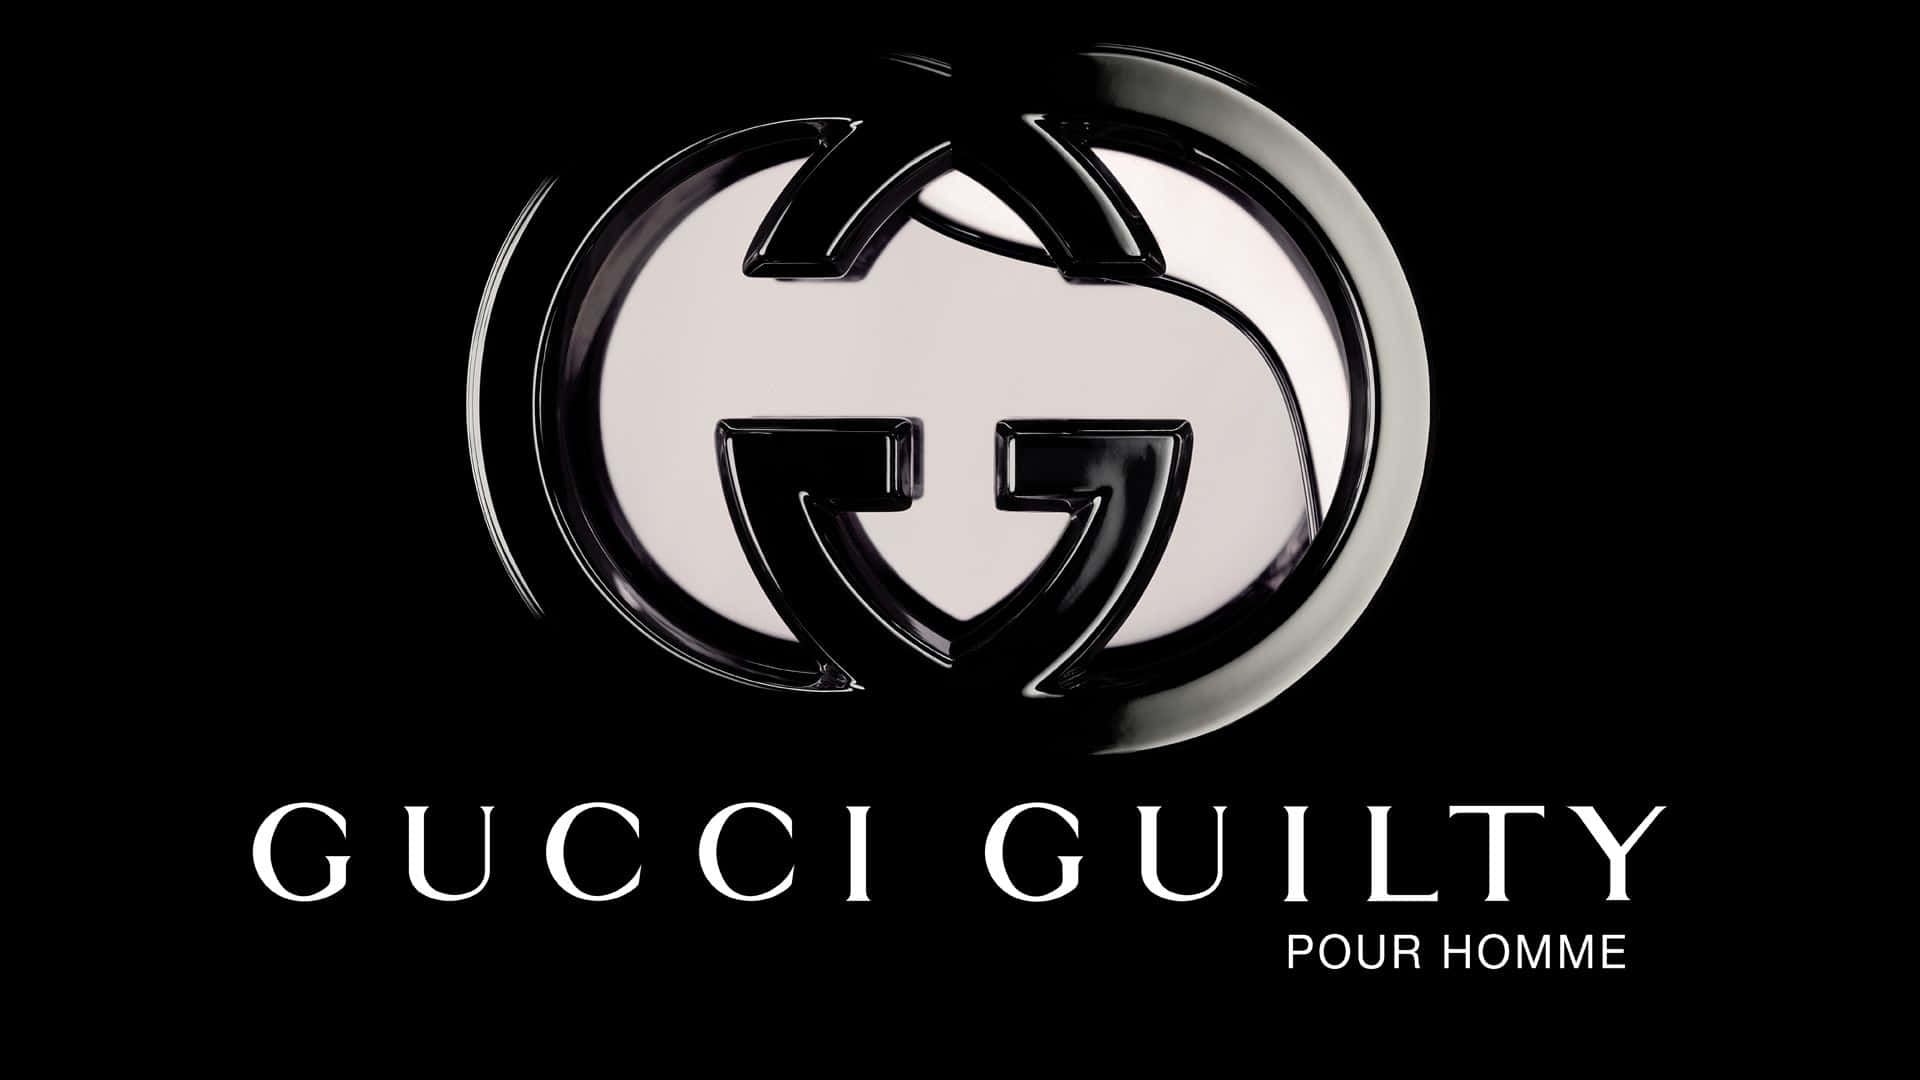 Konstnärligtskinande Silver Gucci Guilty Logotypsbakgrund